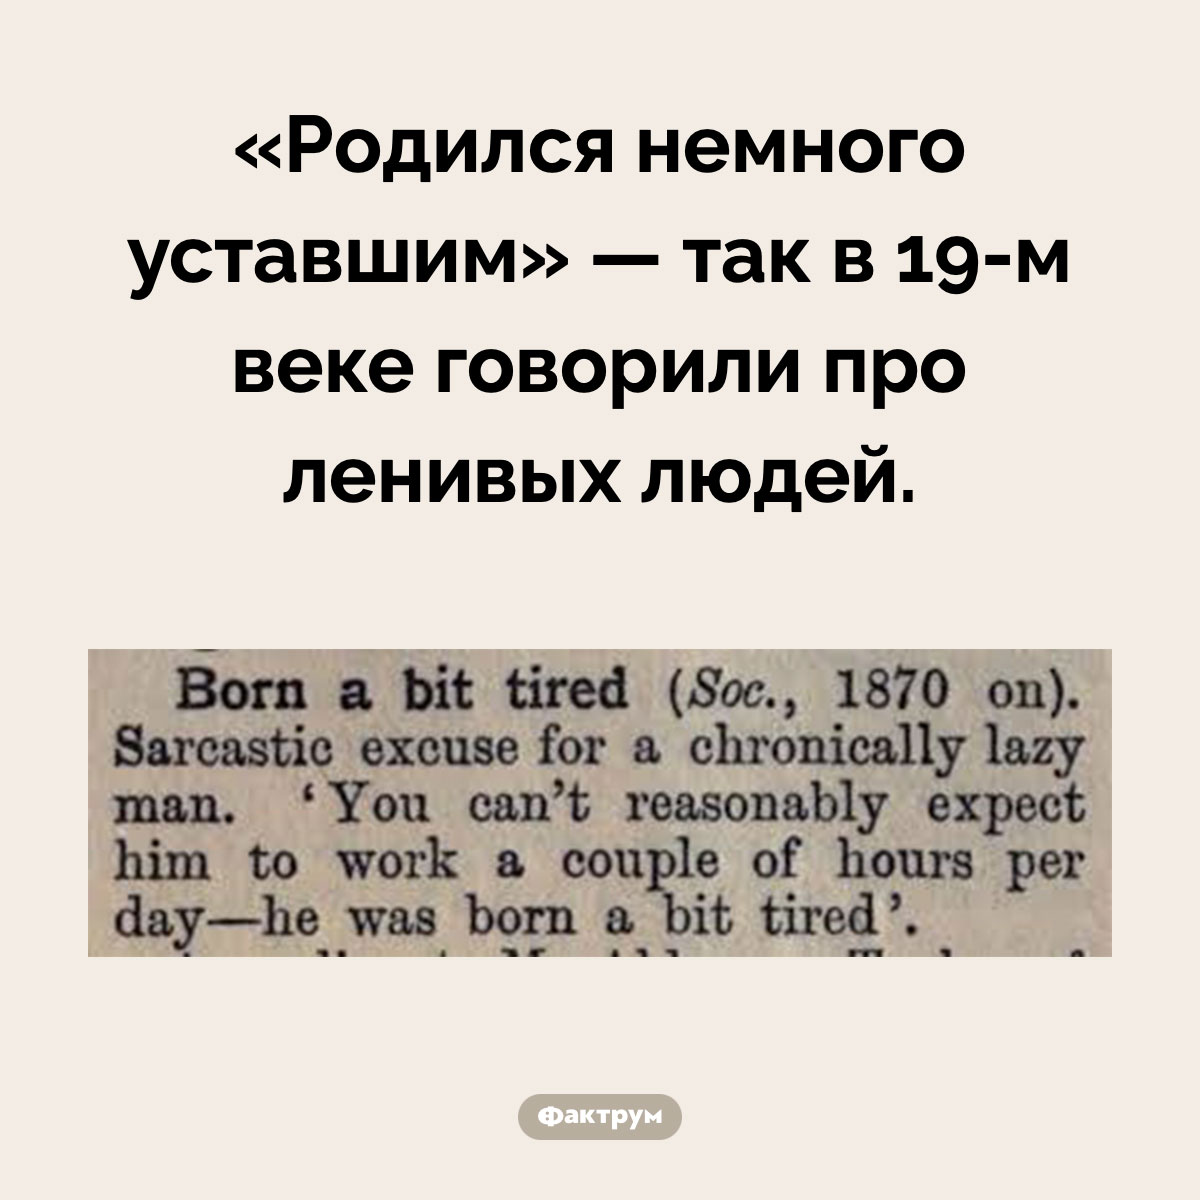 Родился немного уставшим. «Родился немного уставшим» — так в 19-м веке говорили про ленивых людей.